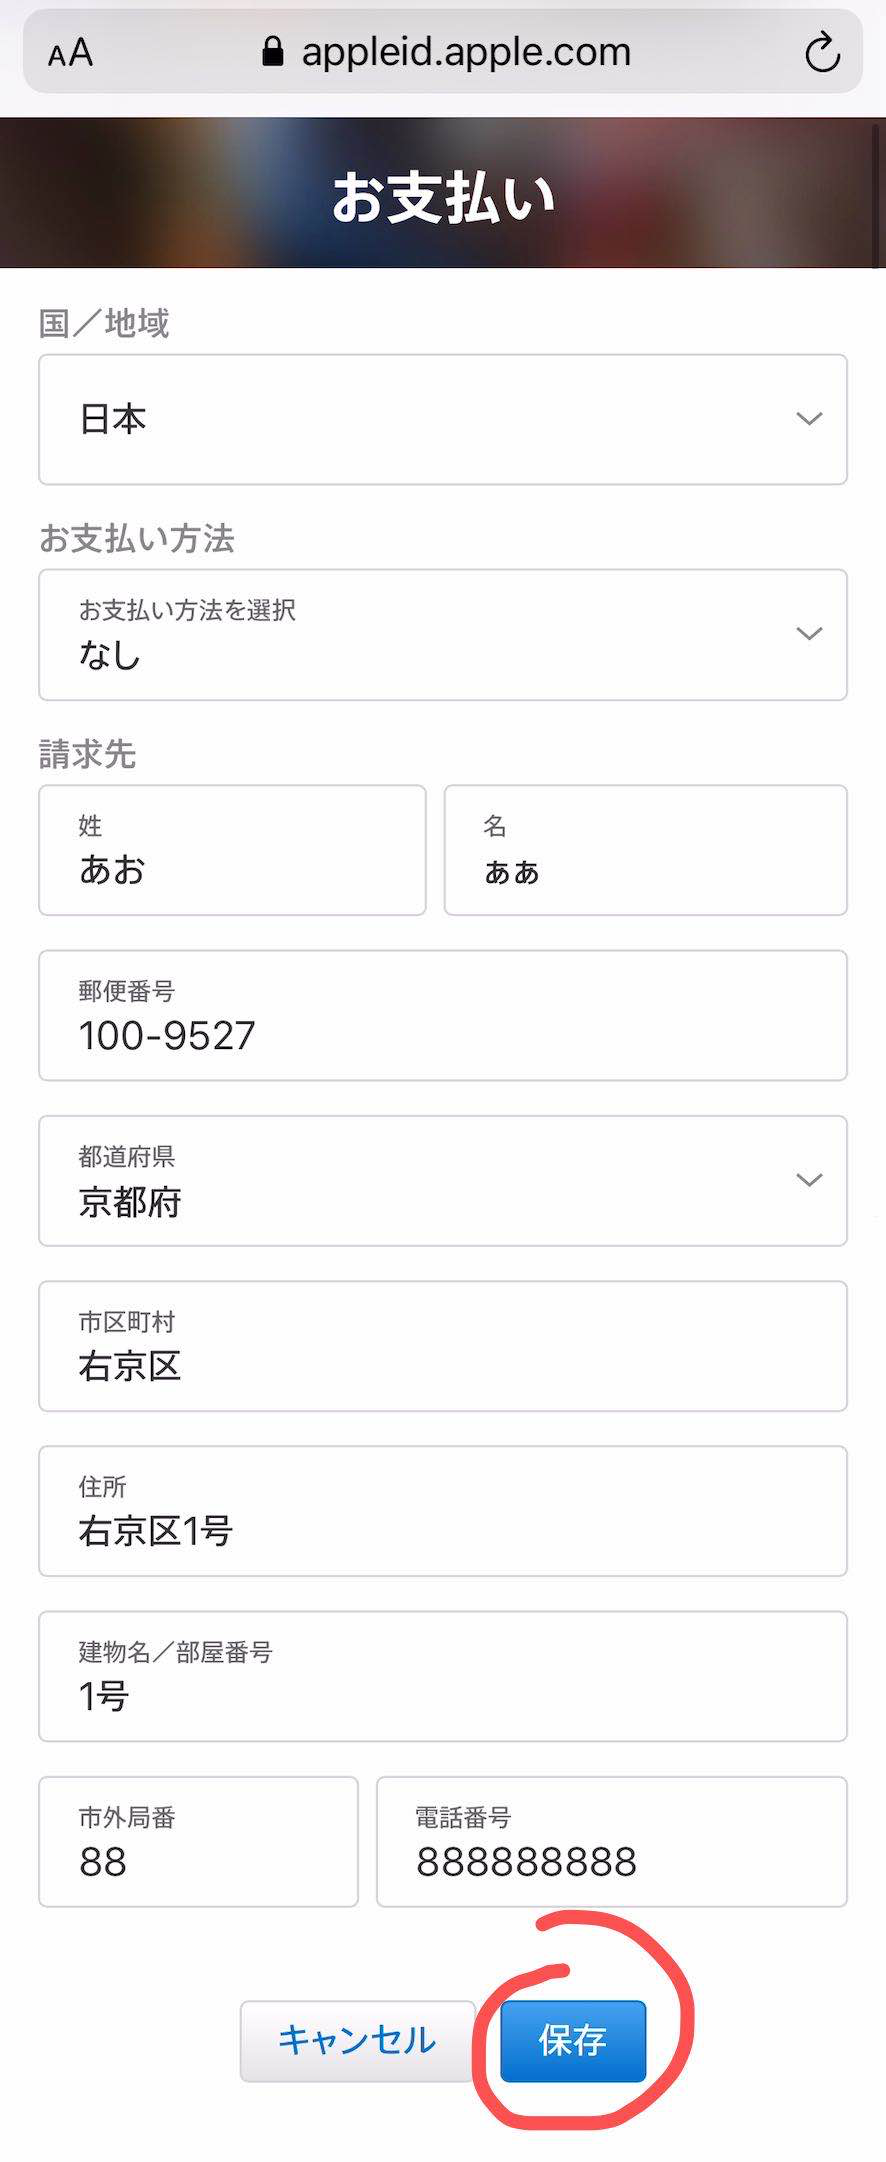 免费注册日本苹果id教程+预约10月28号公测lol手游教程